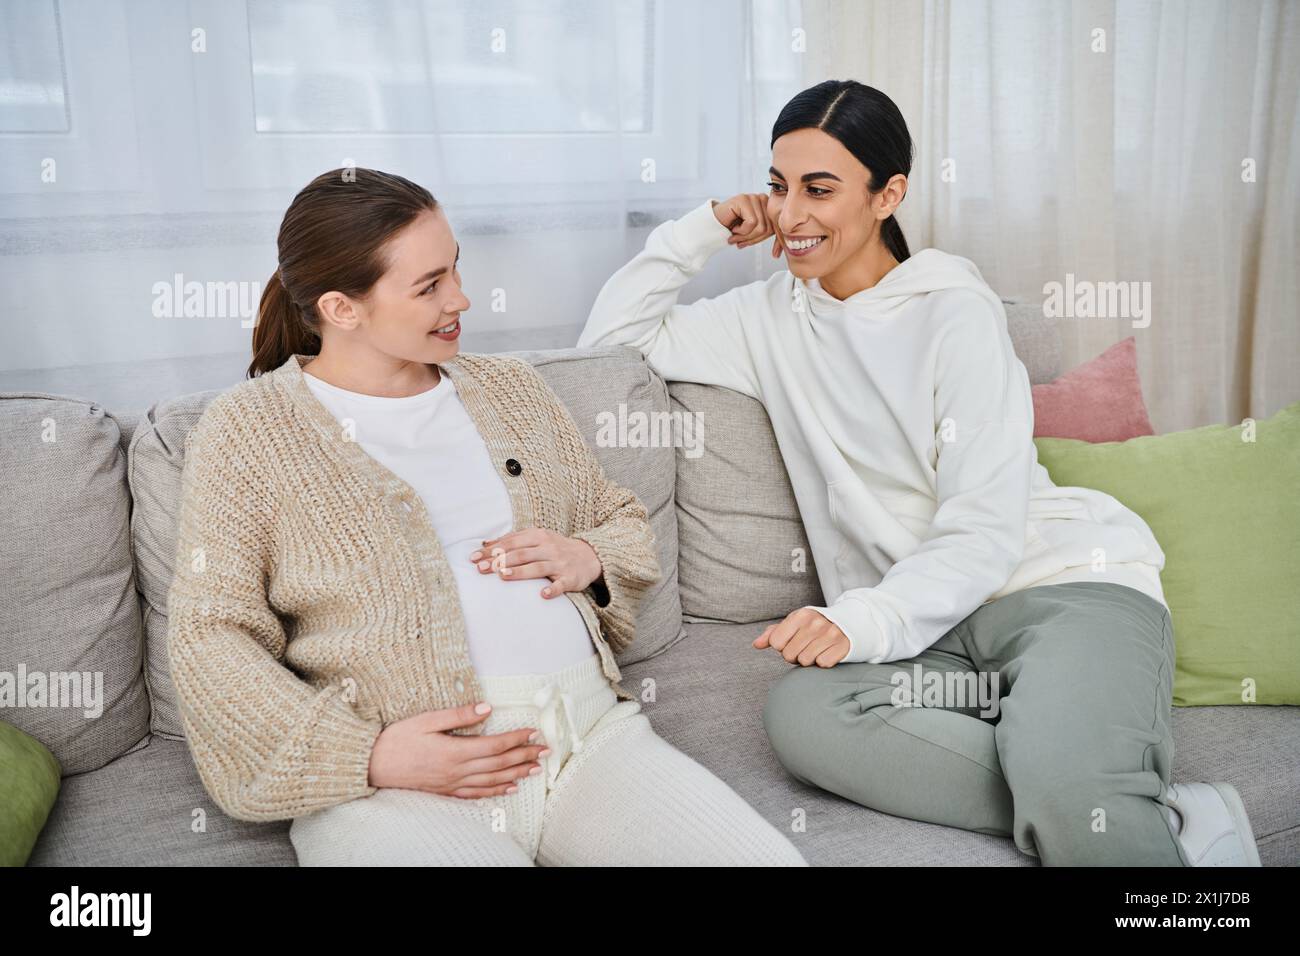 Zwei Frauen, eine schwangere Frau und ihr Trainer, führen während des Elternkurses ein bedeutungsvolles Gespräch auf einer Couch. Stockfoto